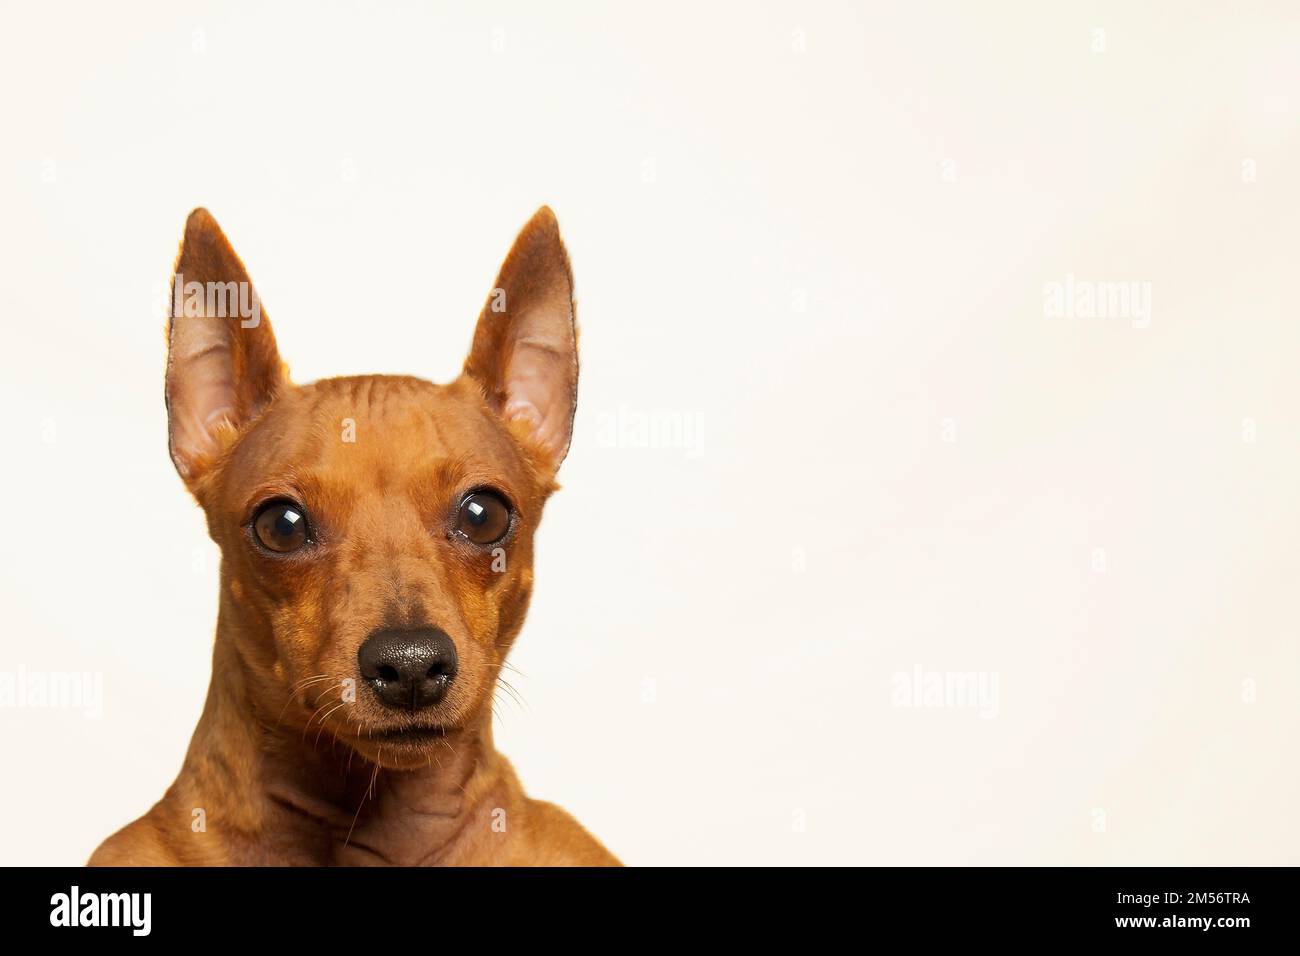 Der braune Maulkorb des Hundes blickt auf einem hellen Hintergrund in die Kamera. Porträt eines fokussierten und aufmerksamen Hundes auf weißem Hintergrund. Ein Vollblut-Haustier. Stockfoto